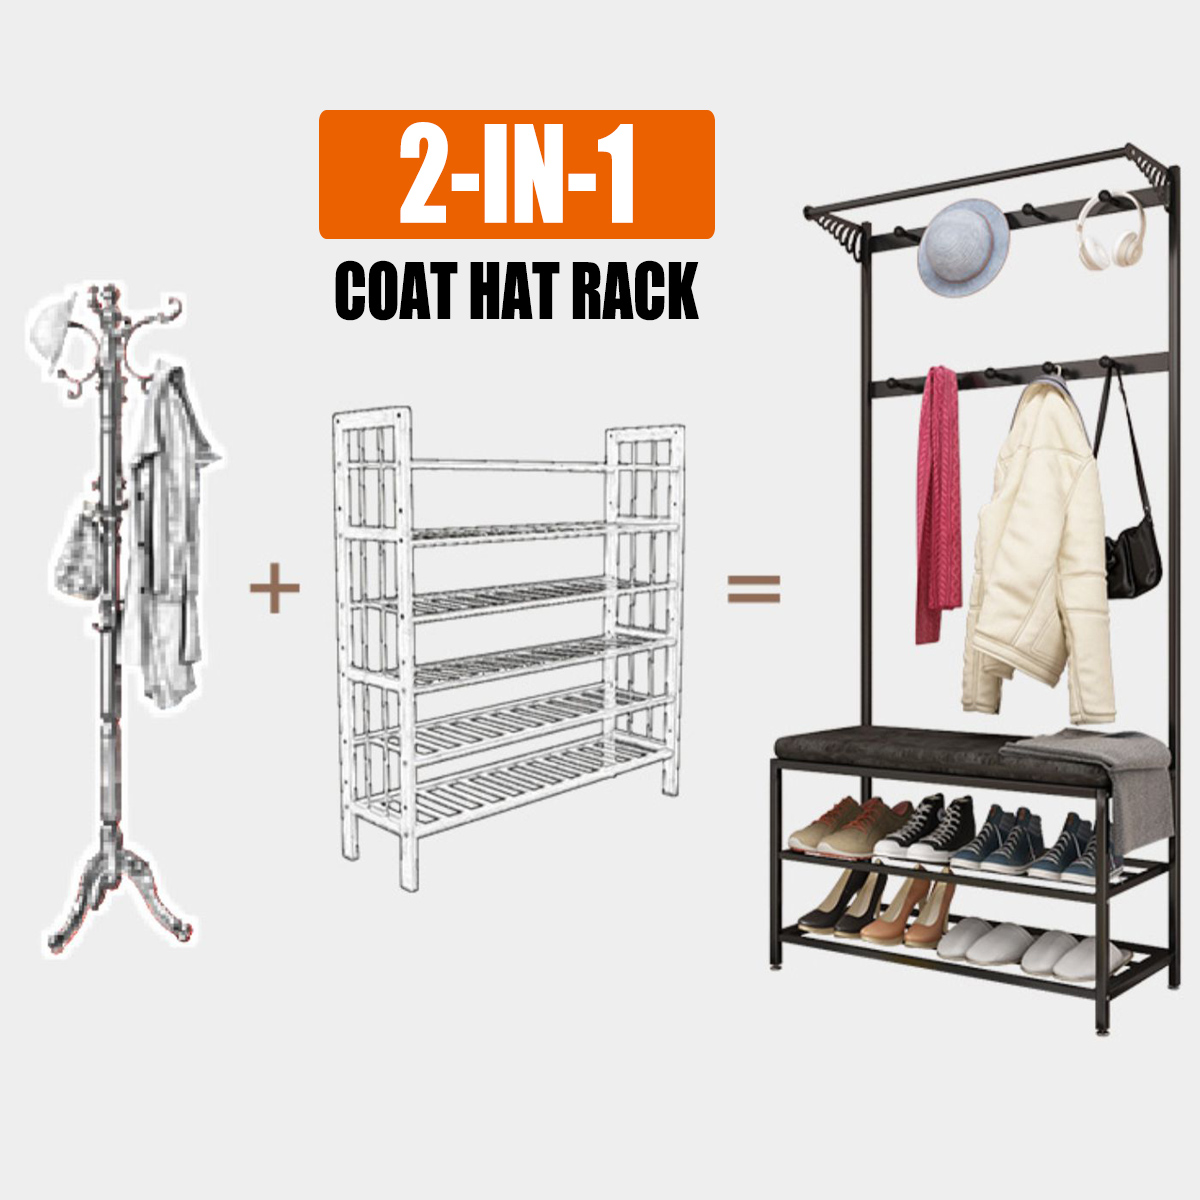 60cm-Coat-Rack-Shoe-Rack-Multifunctional-Storage-Bench-Door-Hat-Clothes-Umbrella-Hangers-Storage-She-1787865-2